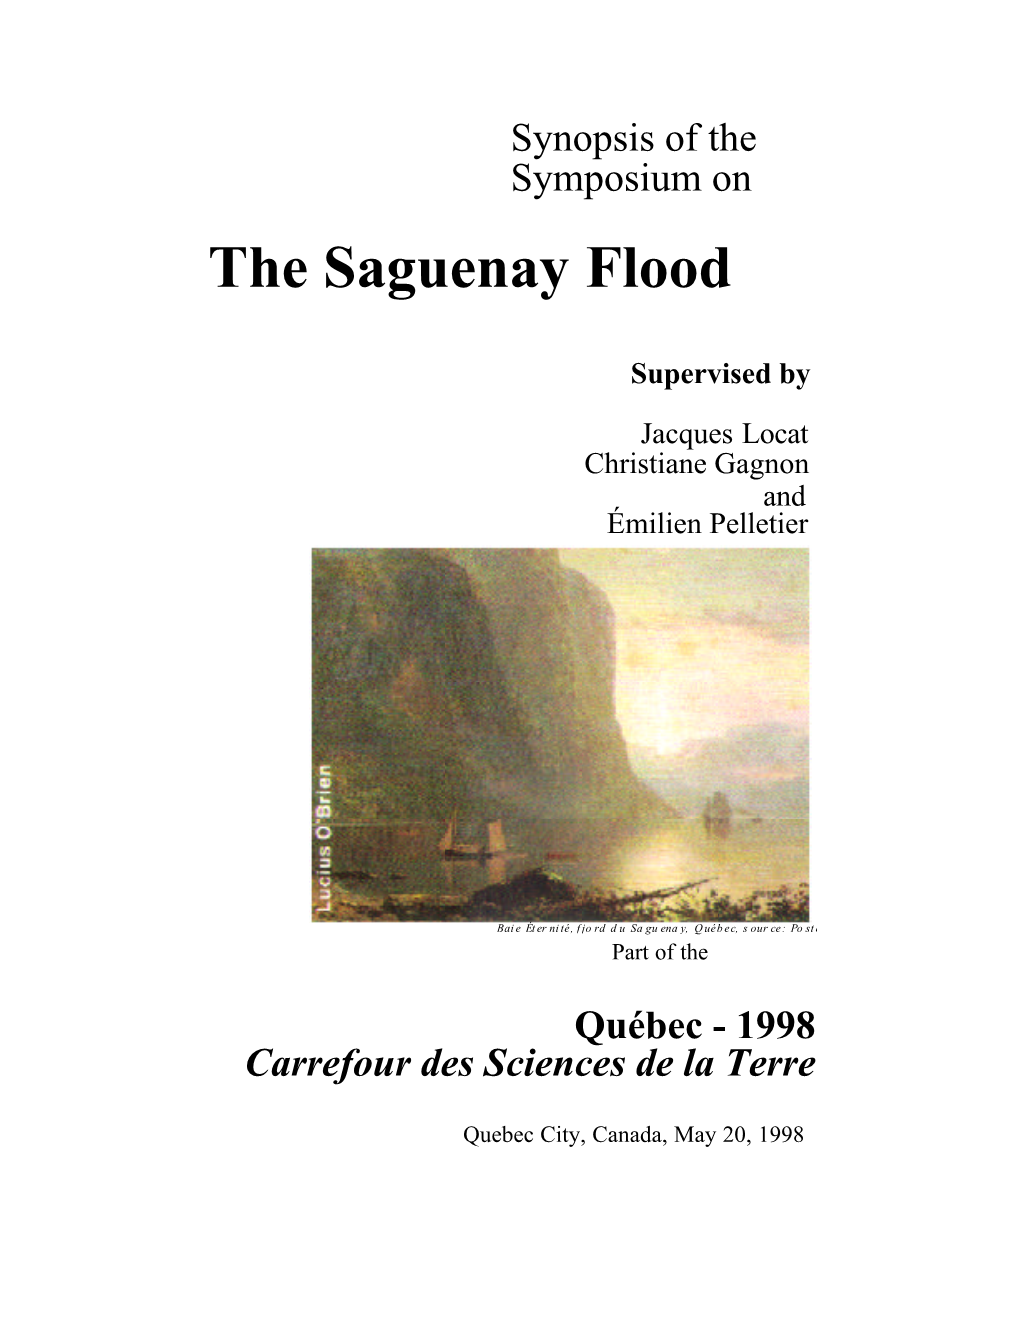 The Saguenay Flood